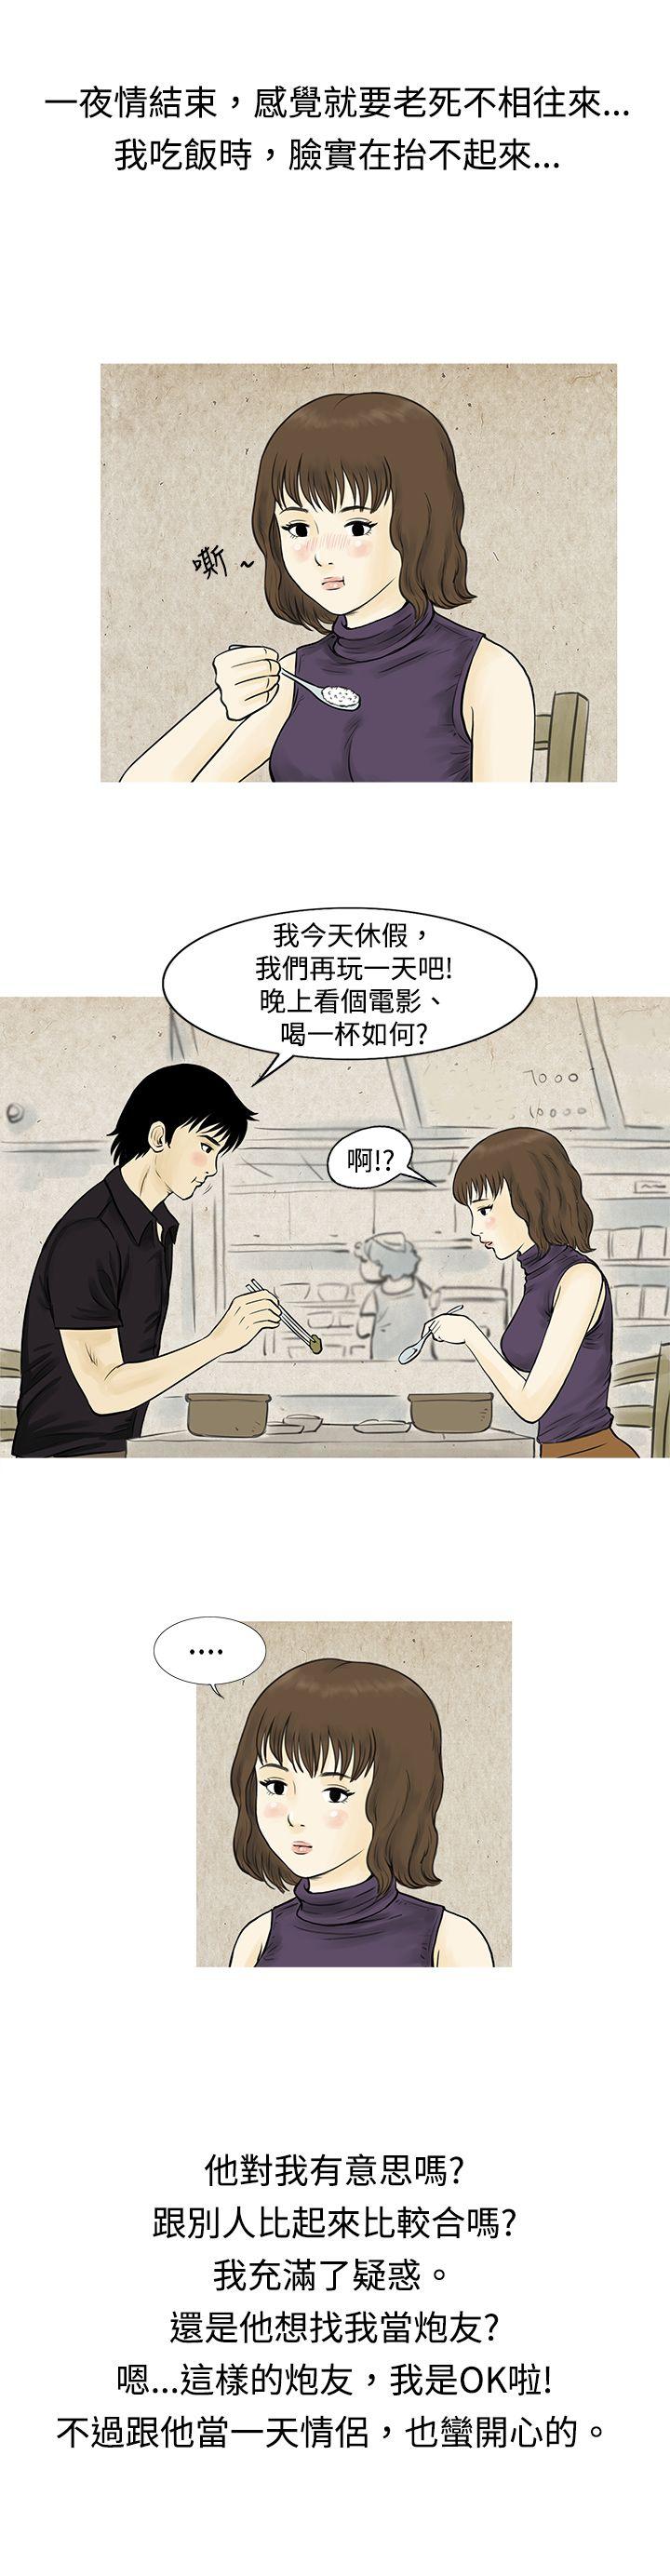 韩国污漫画 秘密Story 遇到渣男的旅馆逃亡记(上) 13